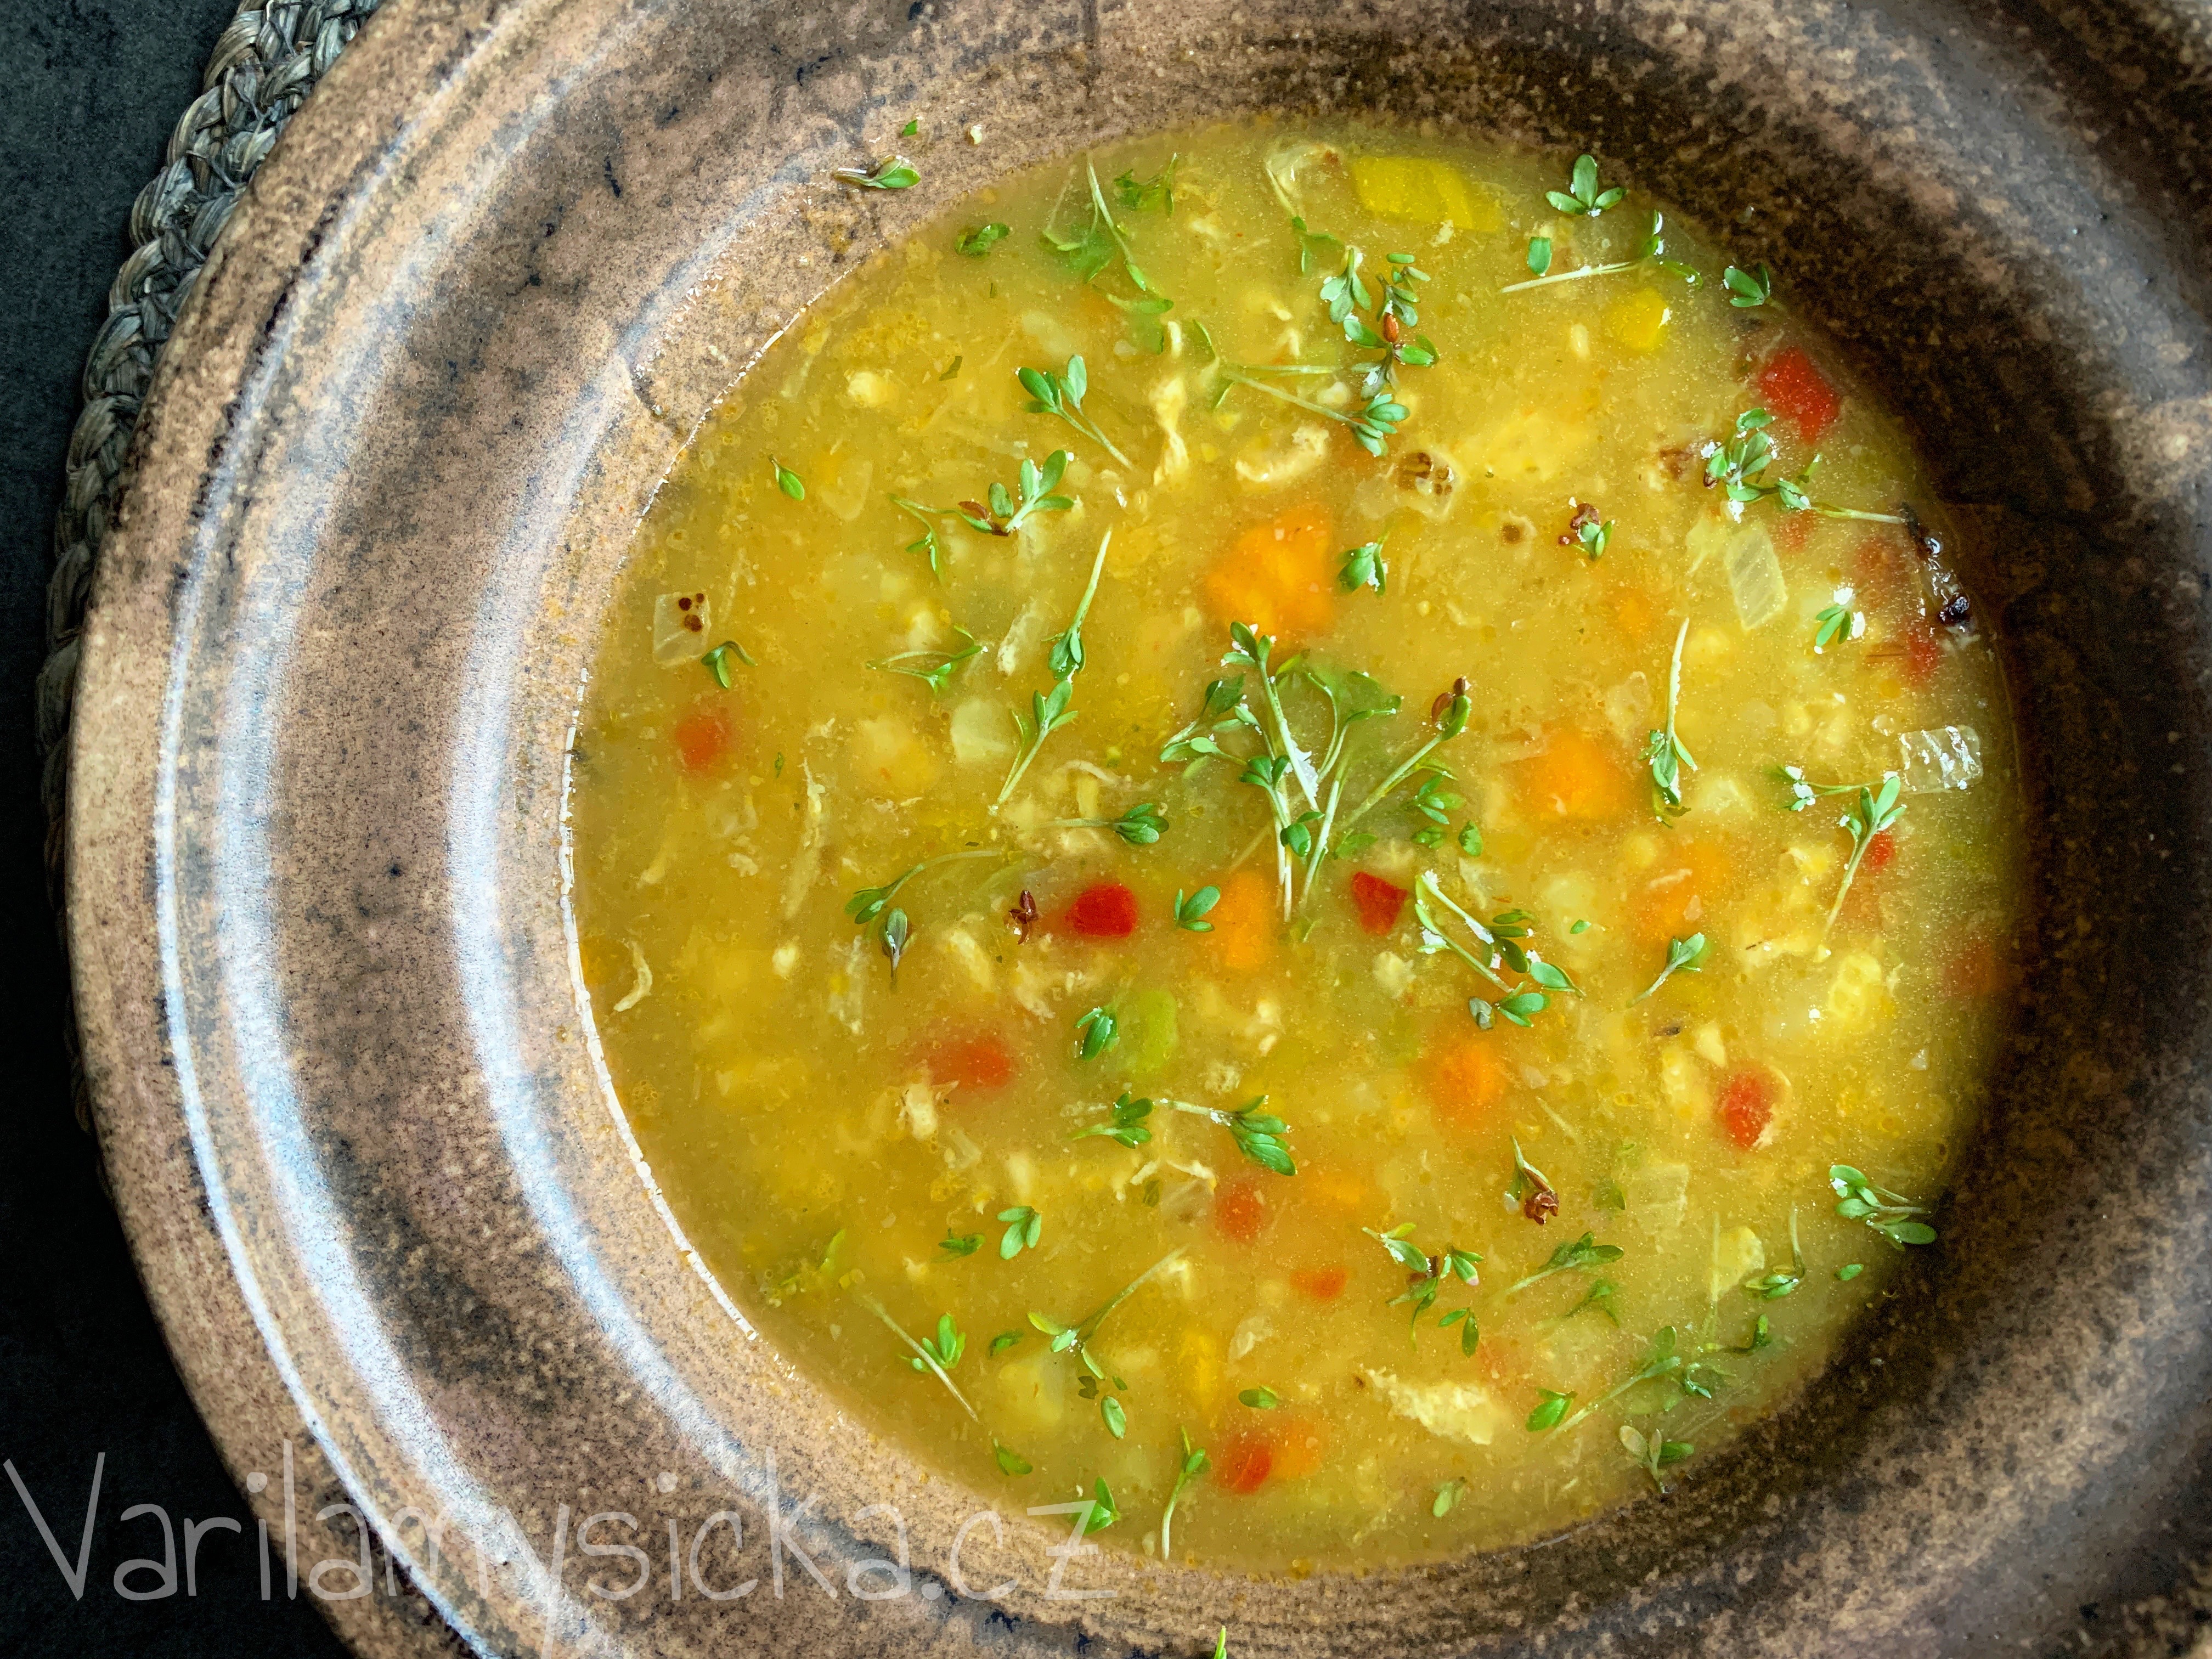 Zeleninová polévka s ovesnými vločkami